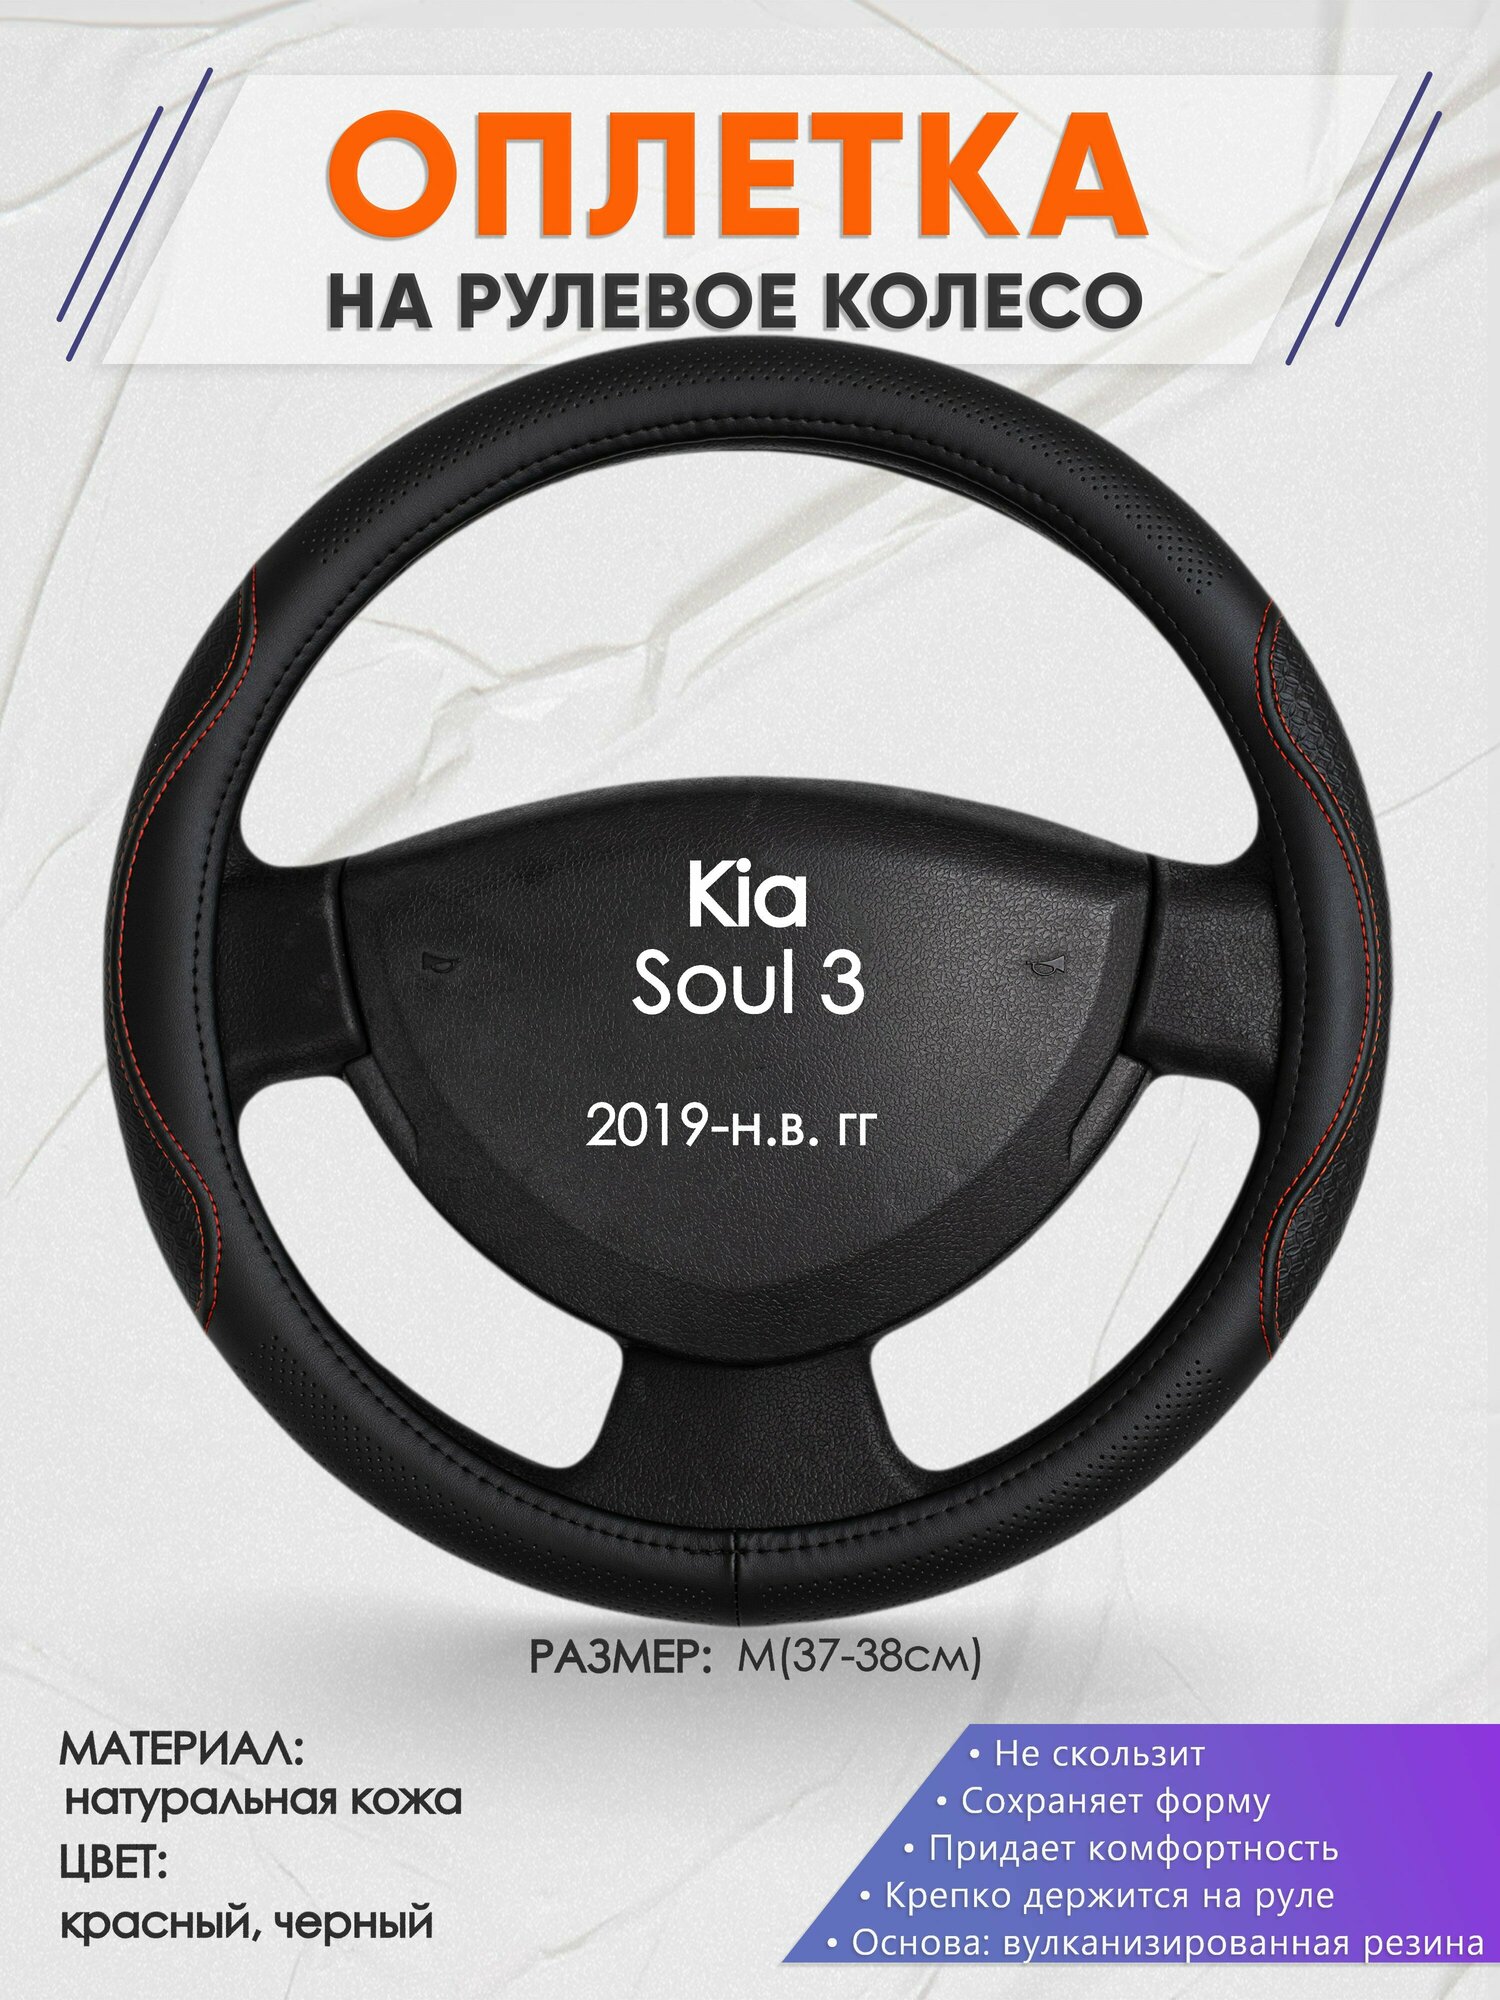 Оплетка на руль для Kia Soul 3(Киа Соул 3) 2019-н. в M(37-38см) Натуральная кожа 90